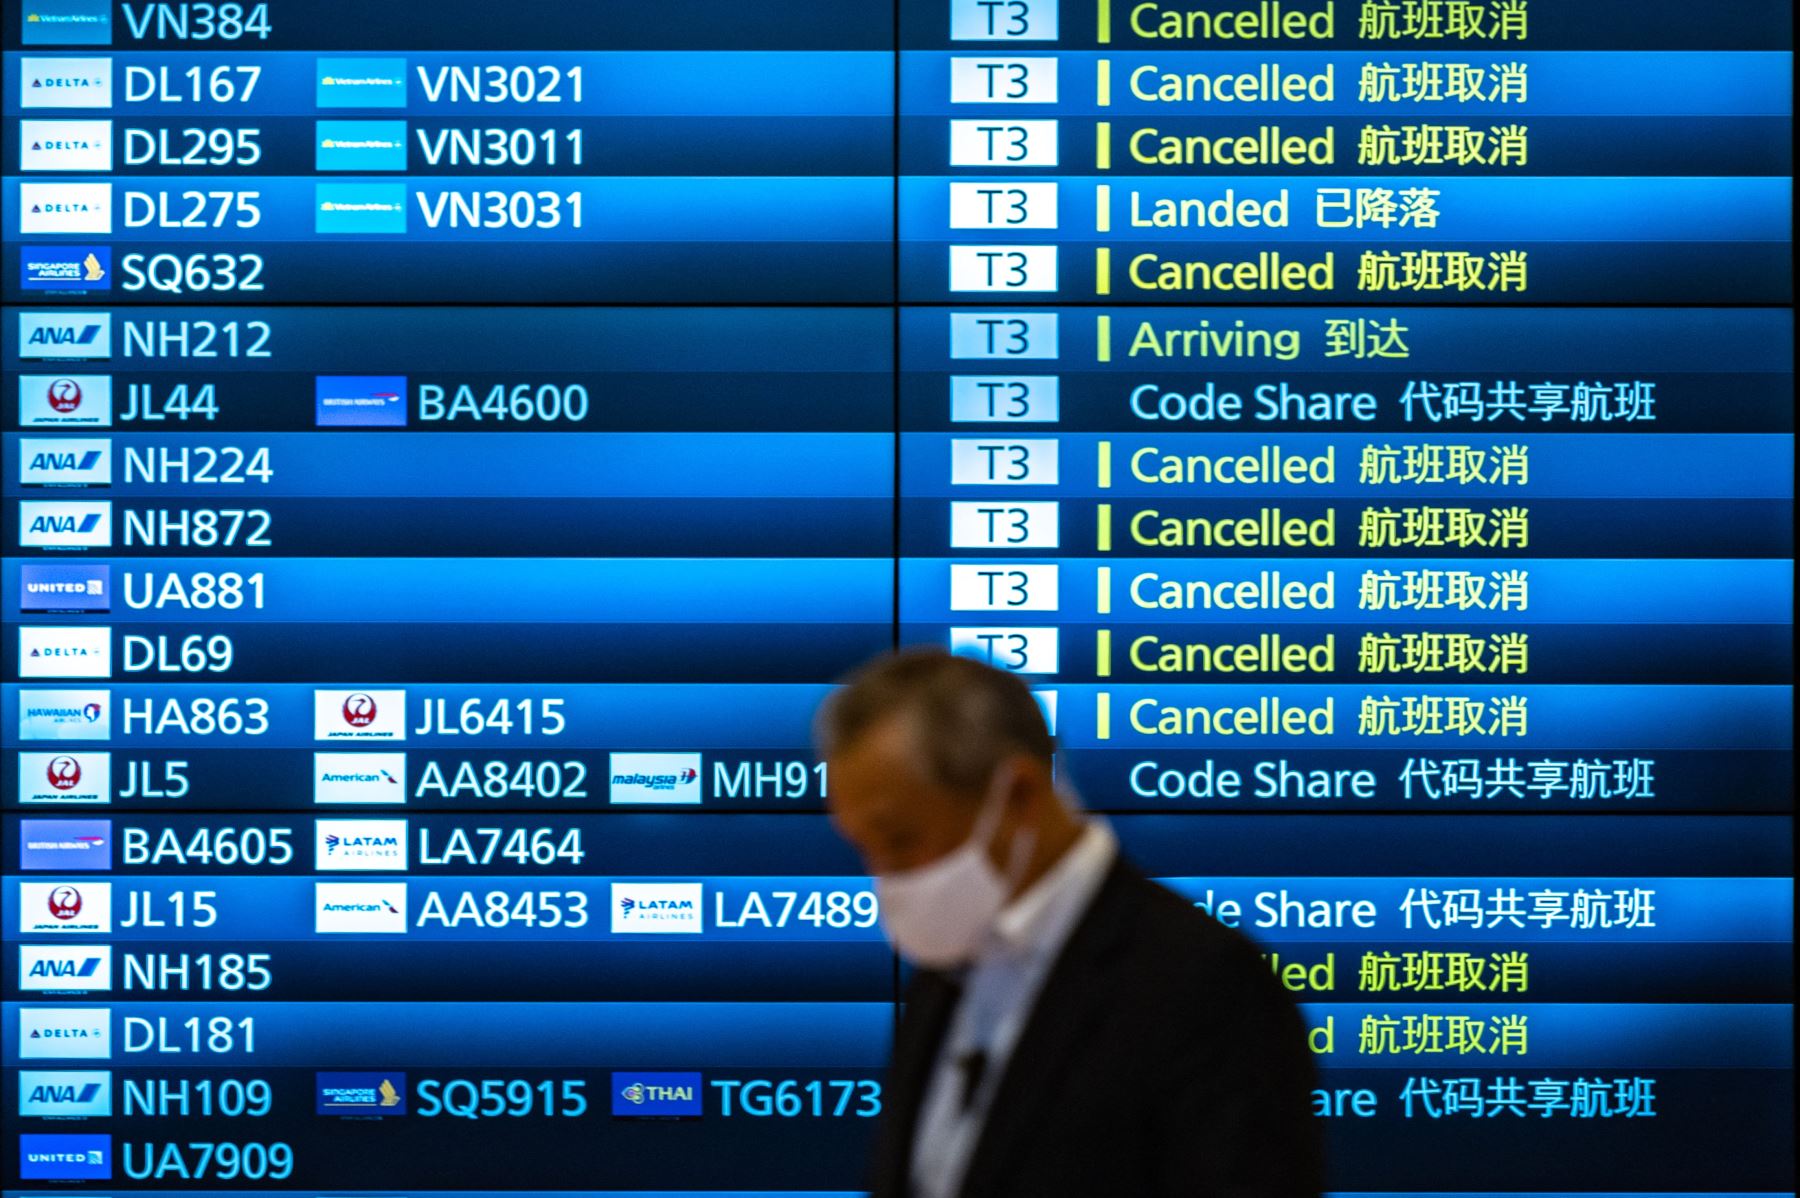 Un hombre pasa junto a un panel de llegadas que muestra vuelos cancelados en el aeropuerto internacional de Haneda de Tokio, un día después de que Japón anunciara que restablecería las estrictas medidas fronterizas, salvo todas las nuevas llegadas extranjeras por la variante ómicron Covid. Foto: AFP